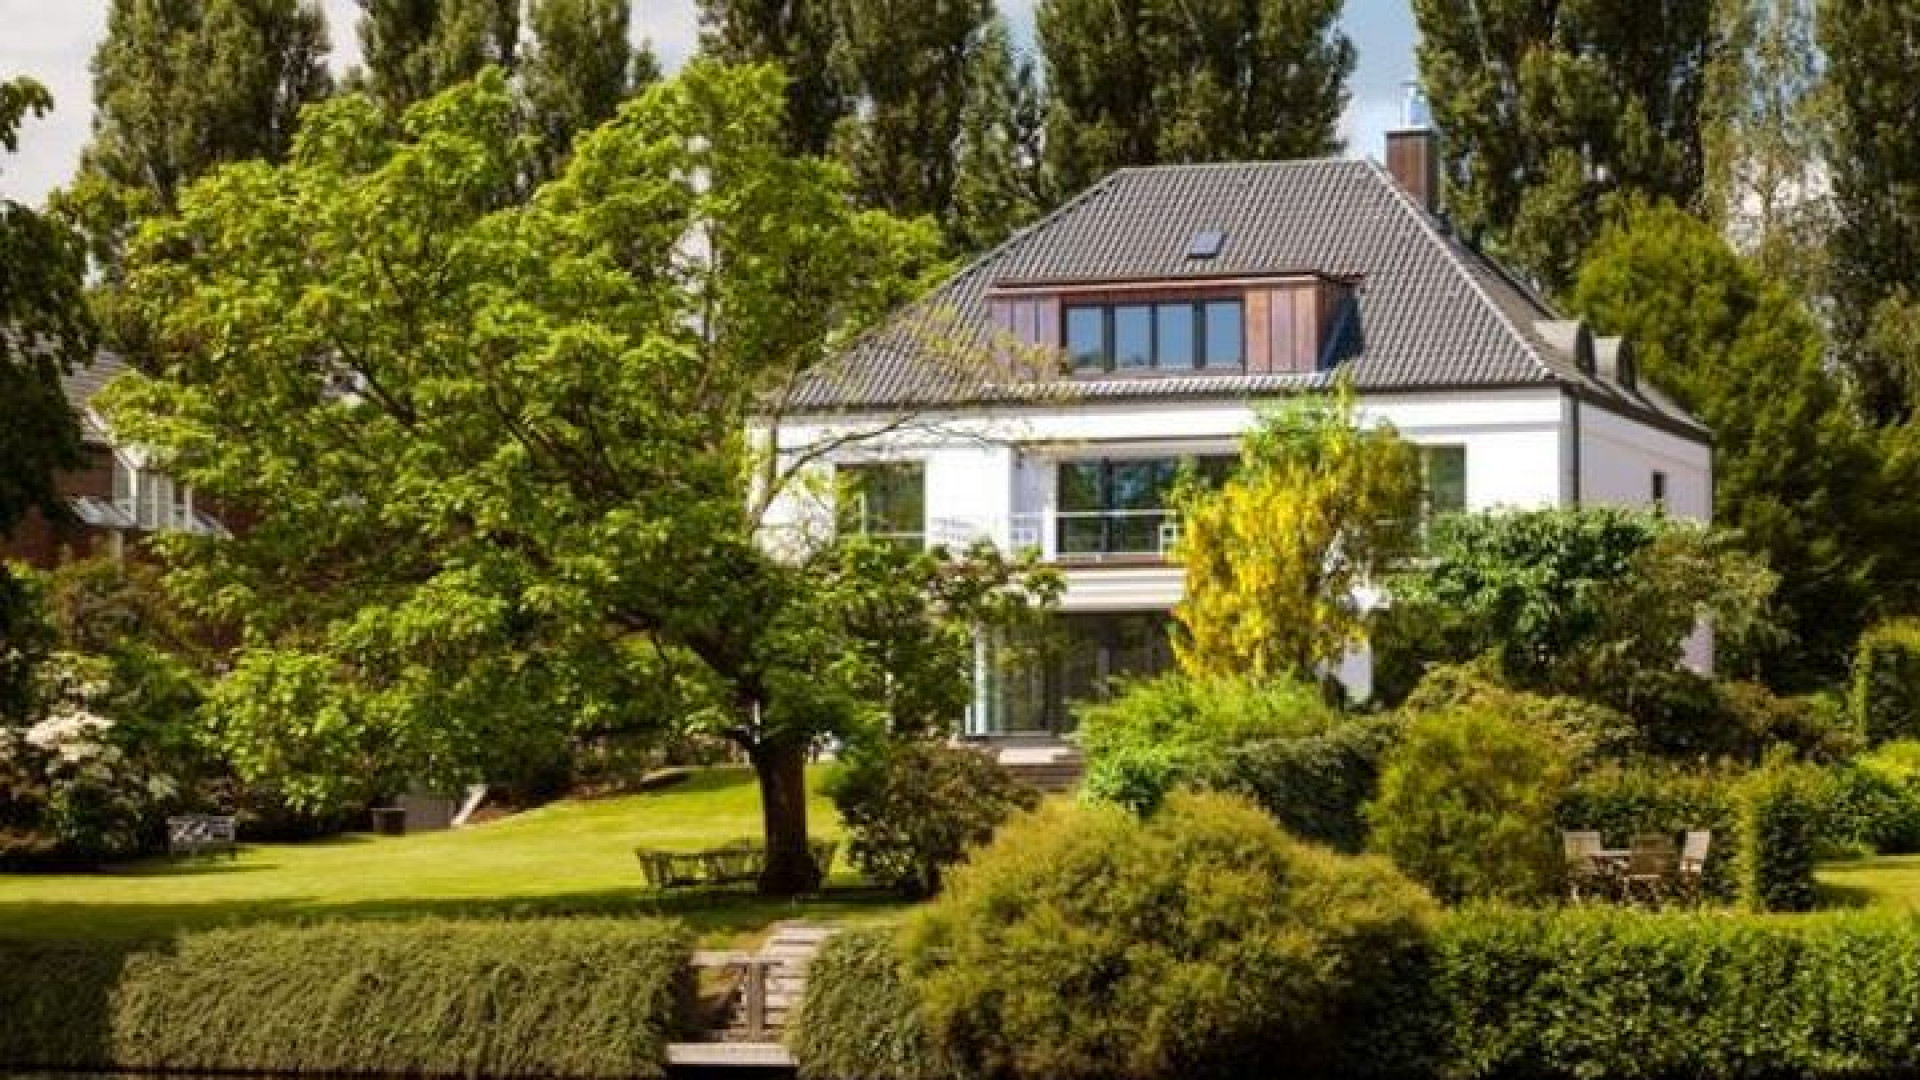 Rafael van der Vaart moet van rechter duizenden euro's per maand betalen voor villa van zijn ex Sabia. Zie foto's